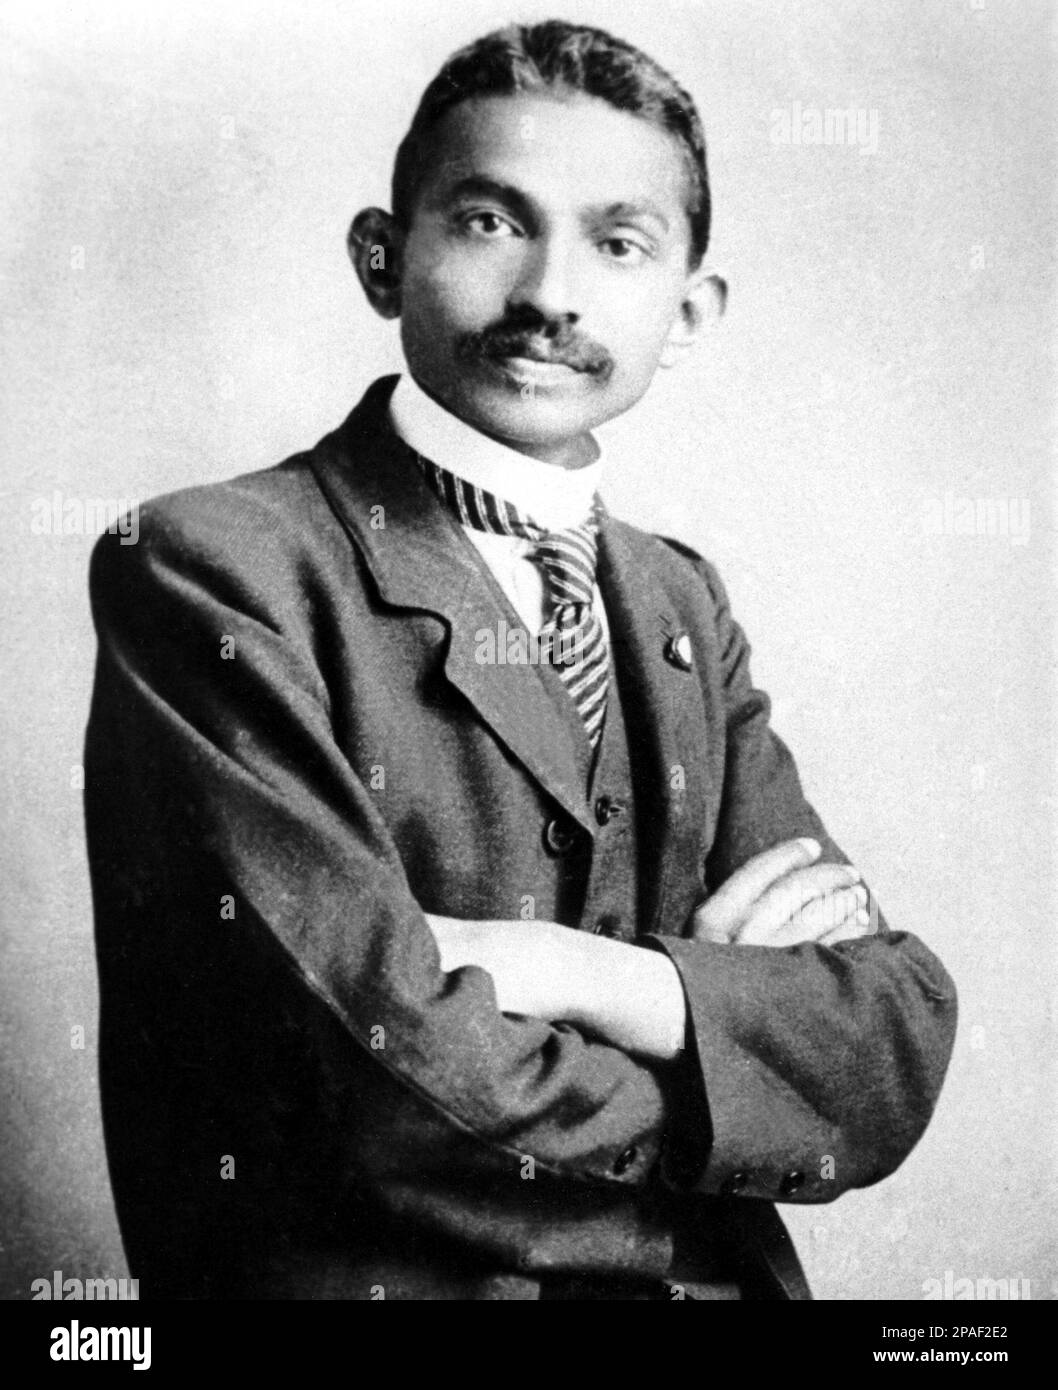 1906 : il leader pacifista indiano MAHATMA GANDHI ( Mohandas Karamchand Gandhi , 1869 - 1948 ) è stato un leader politico e spirituale importante dell'India e del movimento indiano per l'indipendenza. In questa foto quando Gandhi come avvocato in Sud Africa - POLITICO - POLITICA - POLITICA - PACIFISMO - PACIFISTA - PACIFISTA - PACIFISMO - baffi - baffi - cravatta - colletto - colletto - INDIA - personalita' da giovane giovane - personalità personaòlities quando era giovane ---- ARCHIVIO GBB Foto Stock